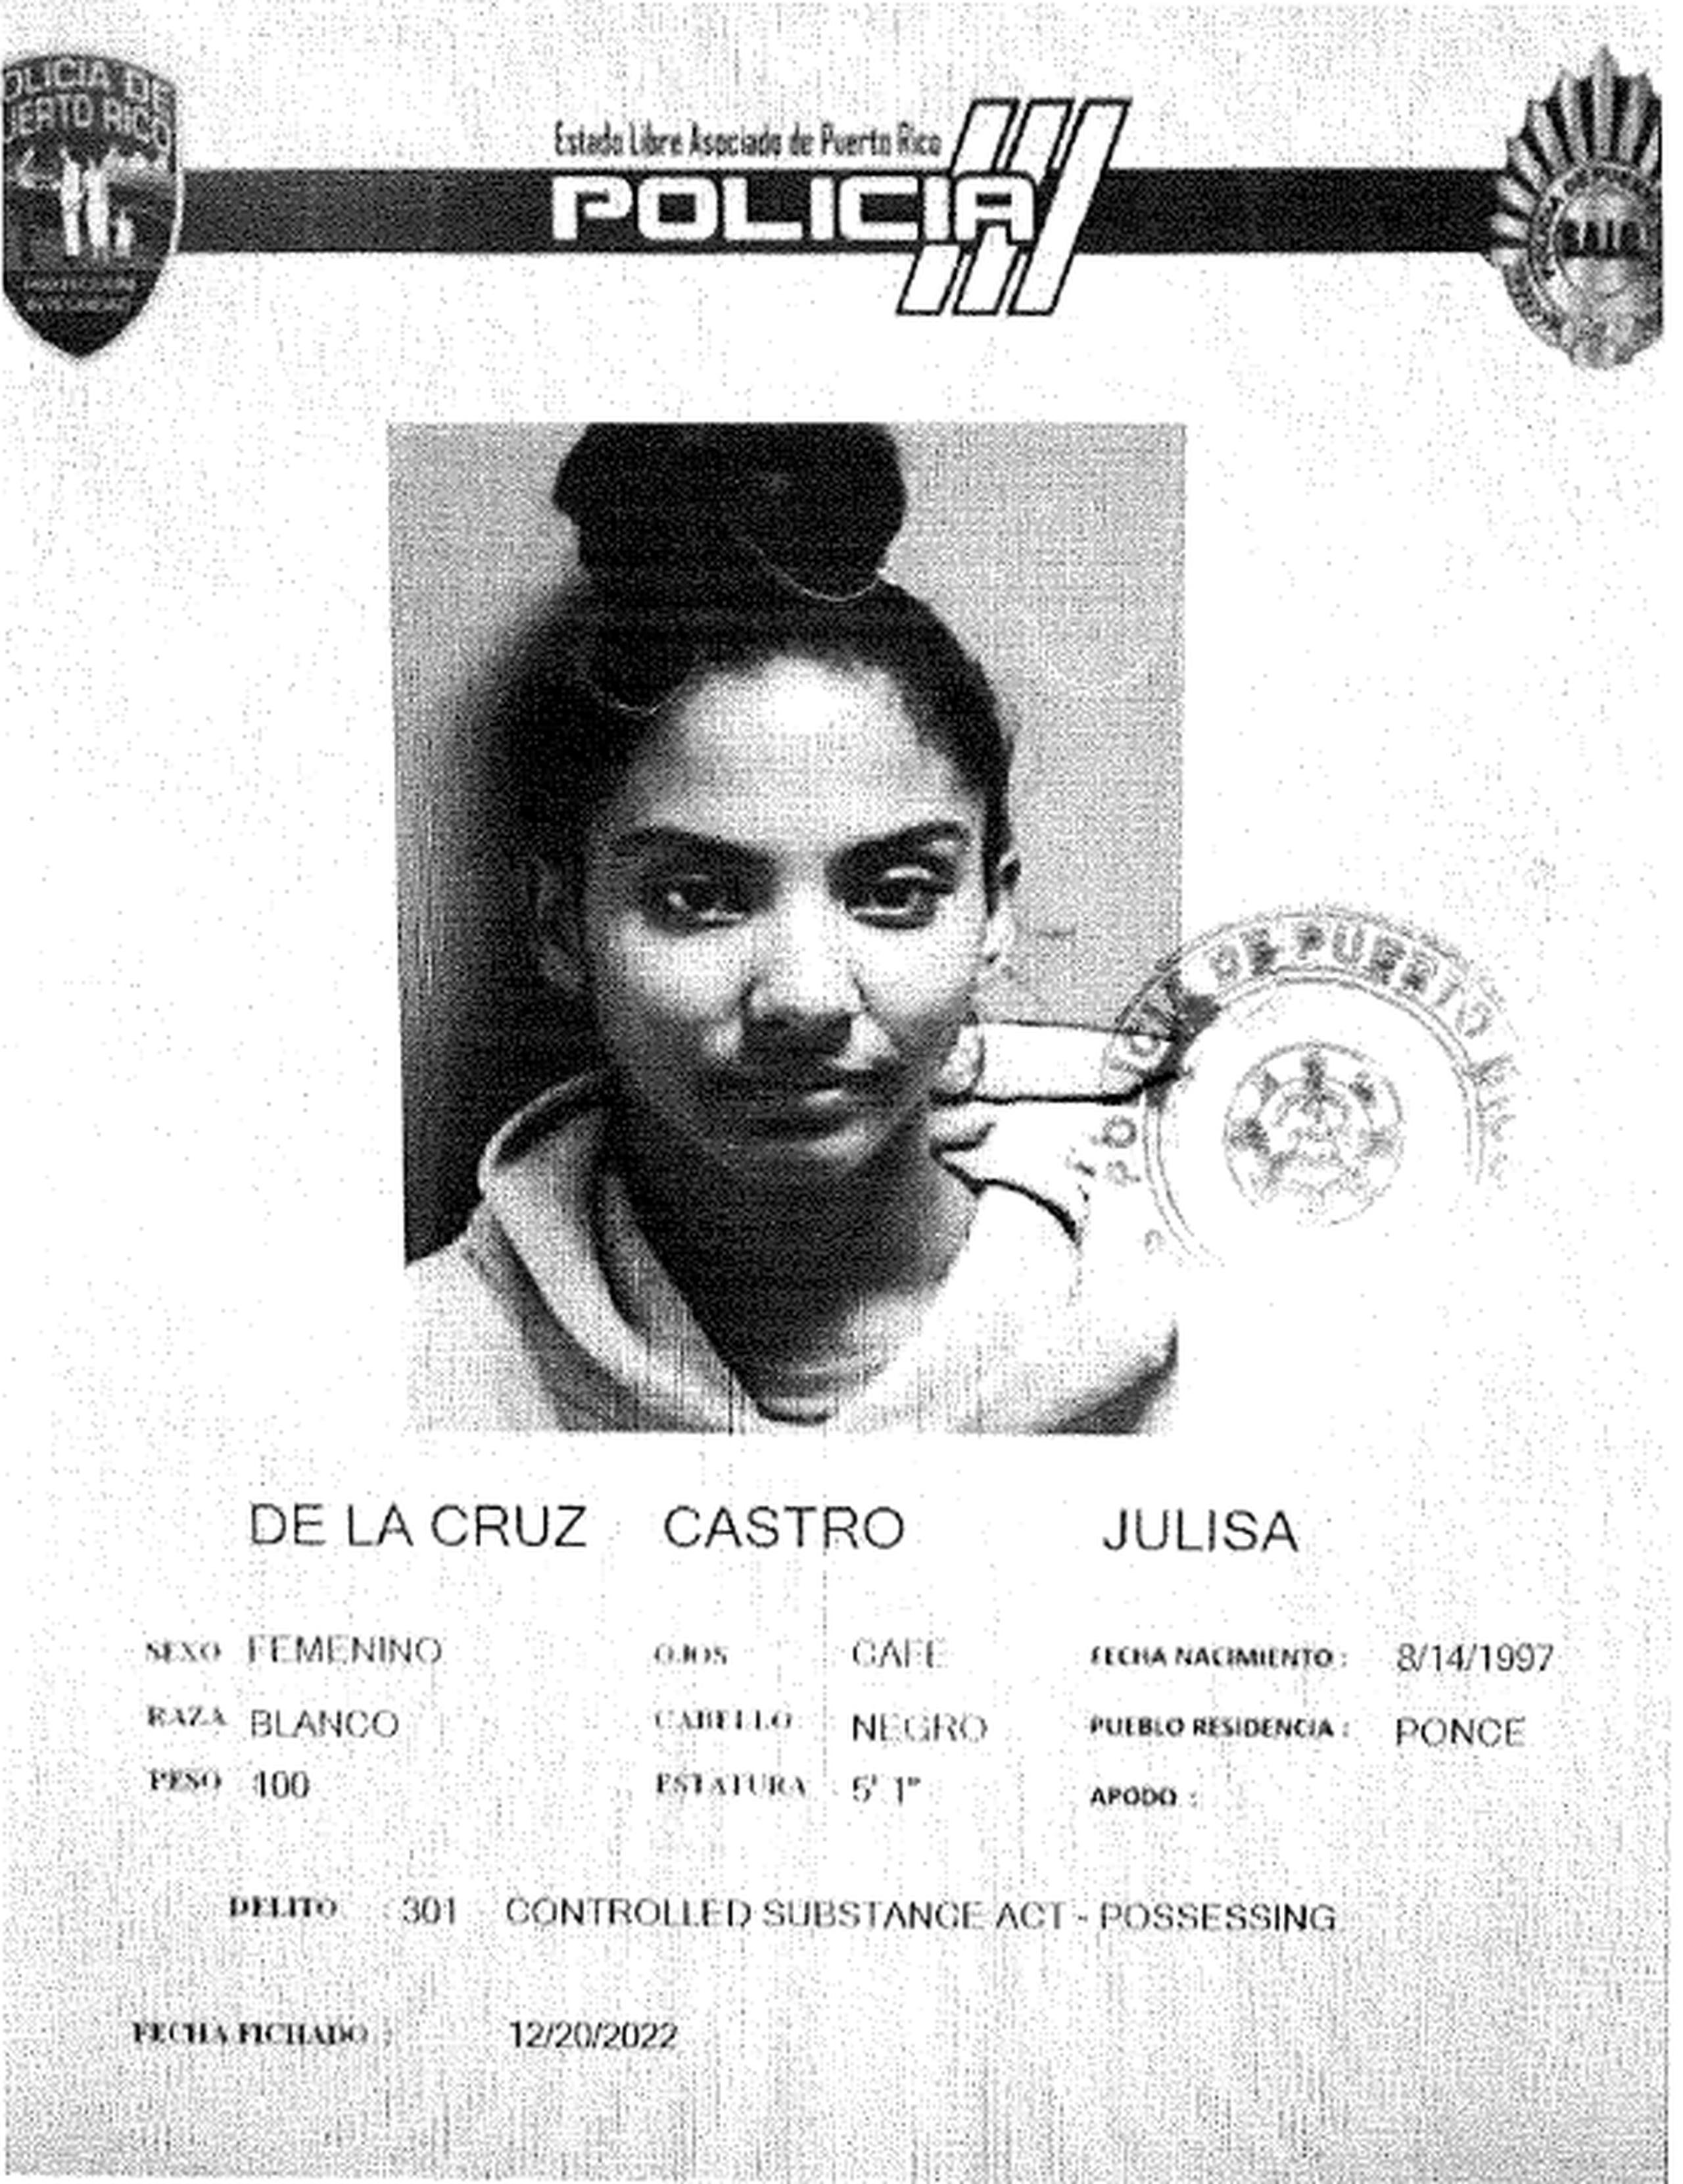 Ficha policíaca de Julisa De La Cruz Castro.